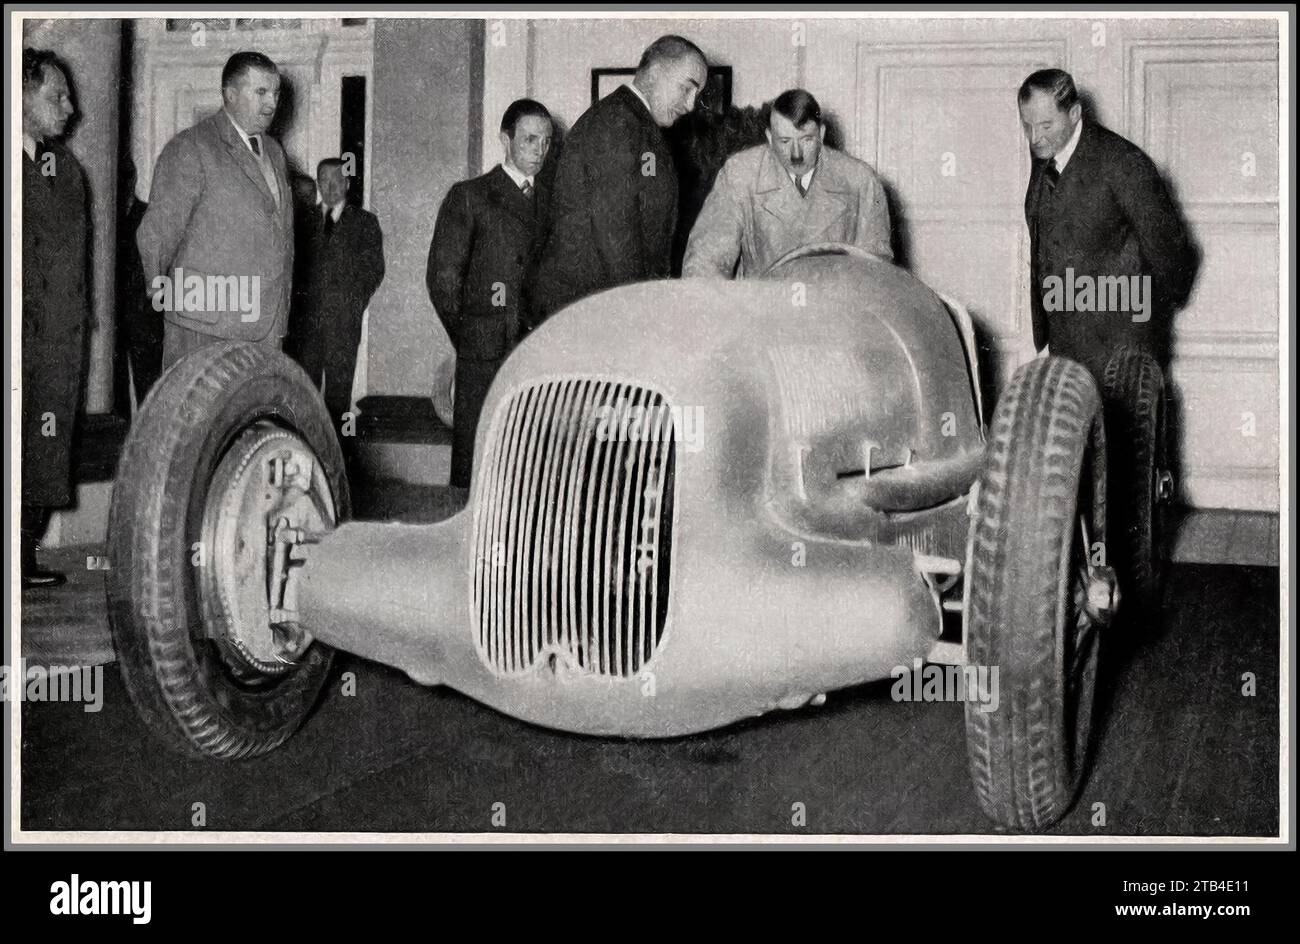 Voiture de course Mercedes 'Silver Arrow' des années 1930, avec Adolf Hitler montré le dernier modèle de course W25 1934. Allemagne nazie Banque D'Images